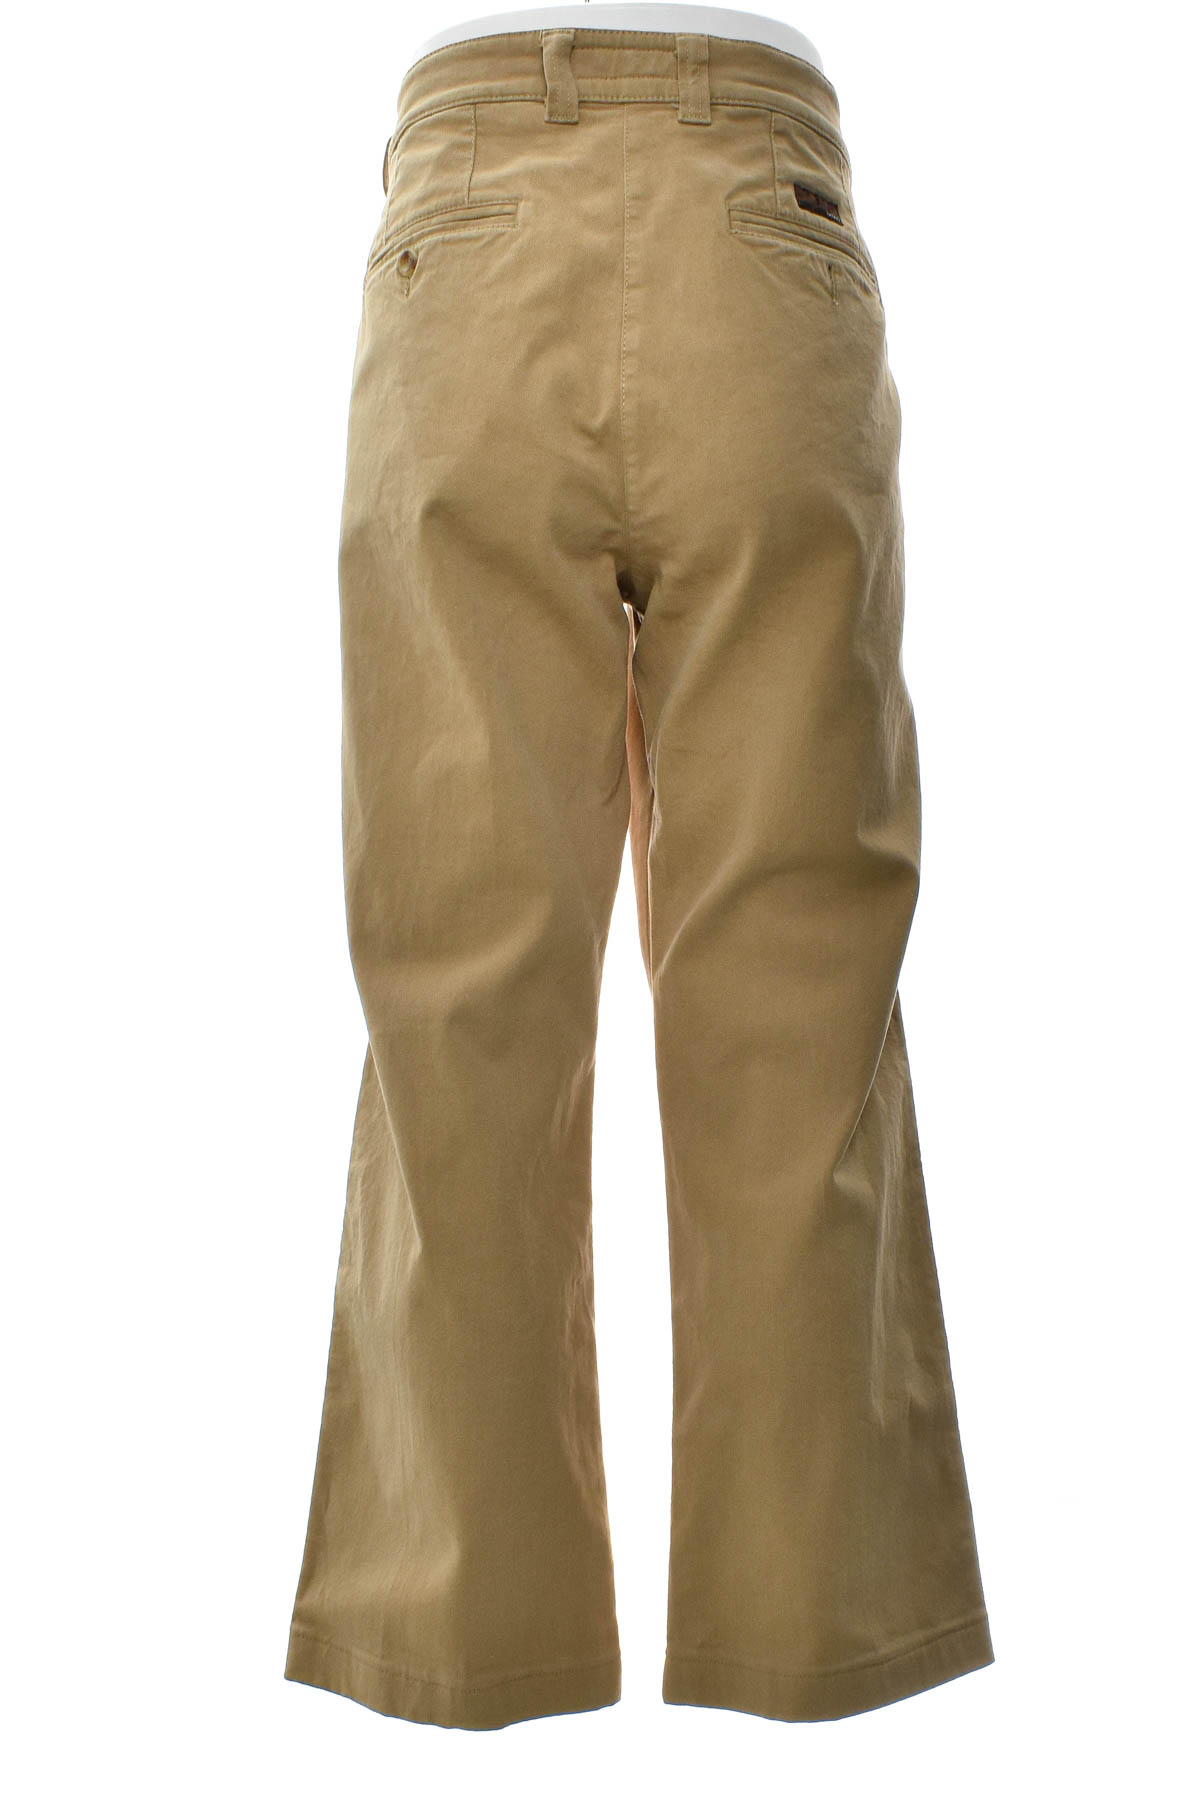 Ανδρικά παντελόνια - MAC - 1